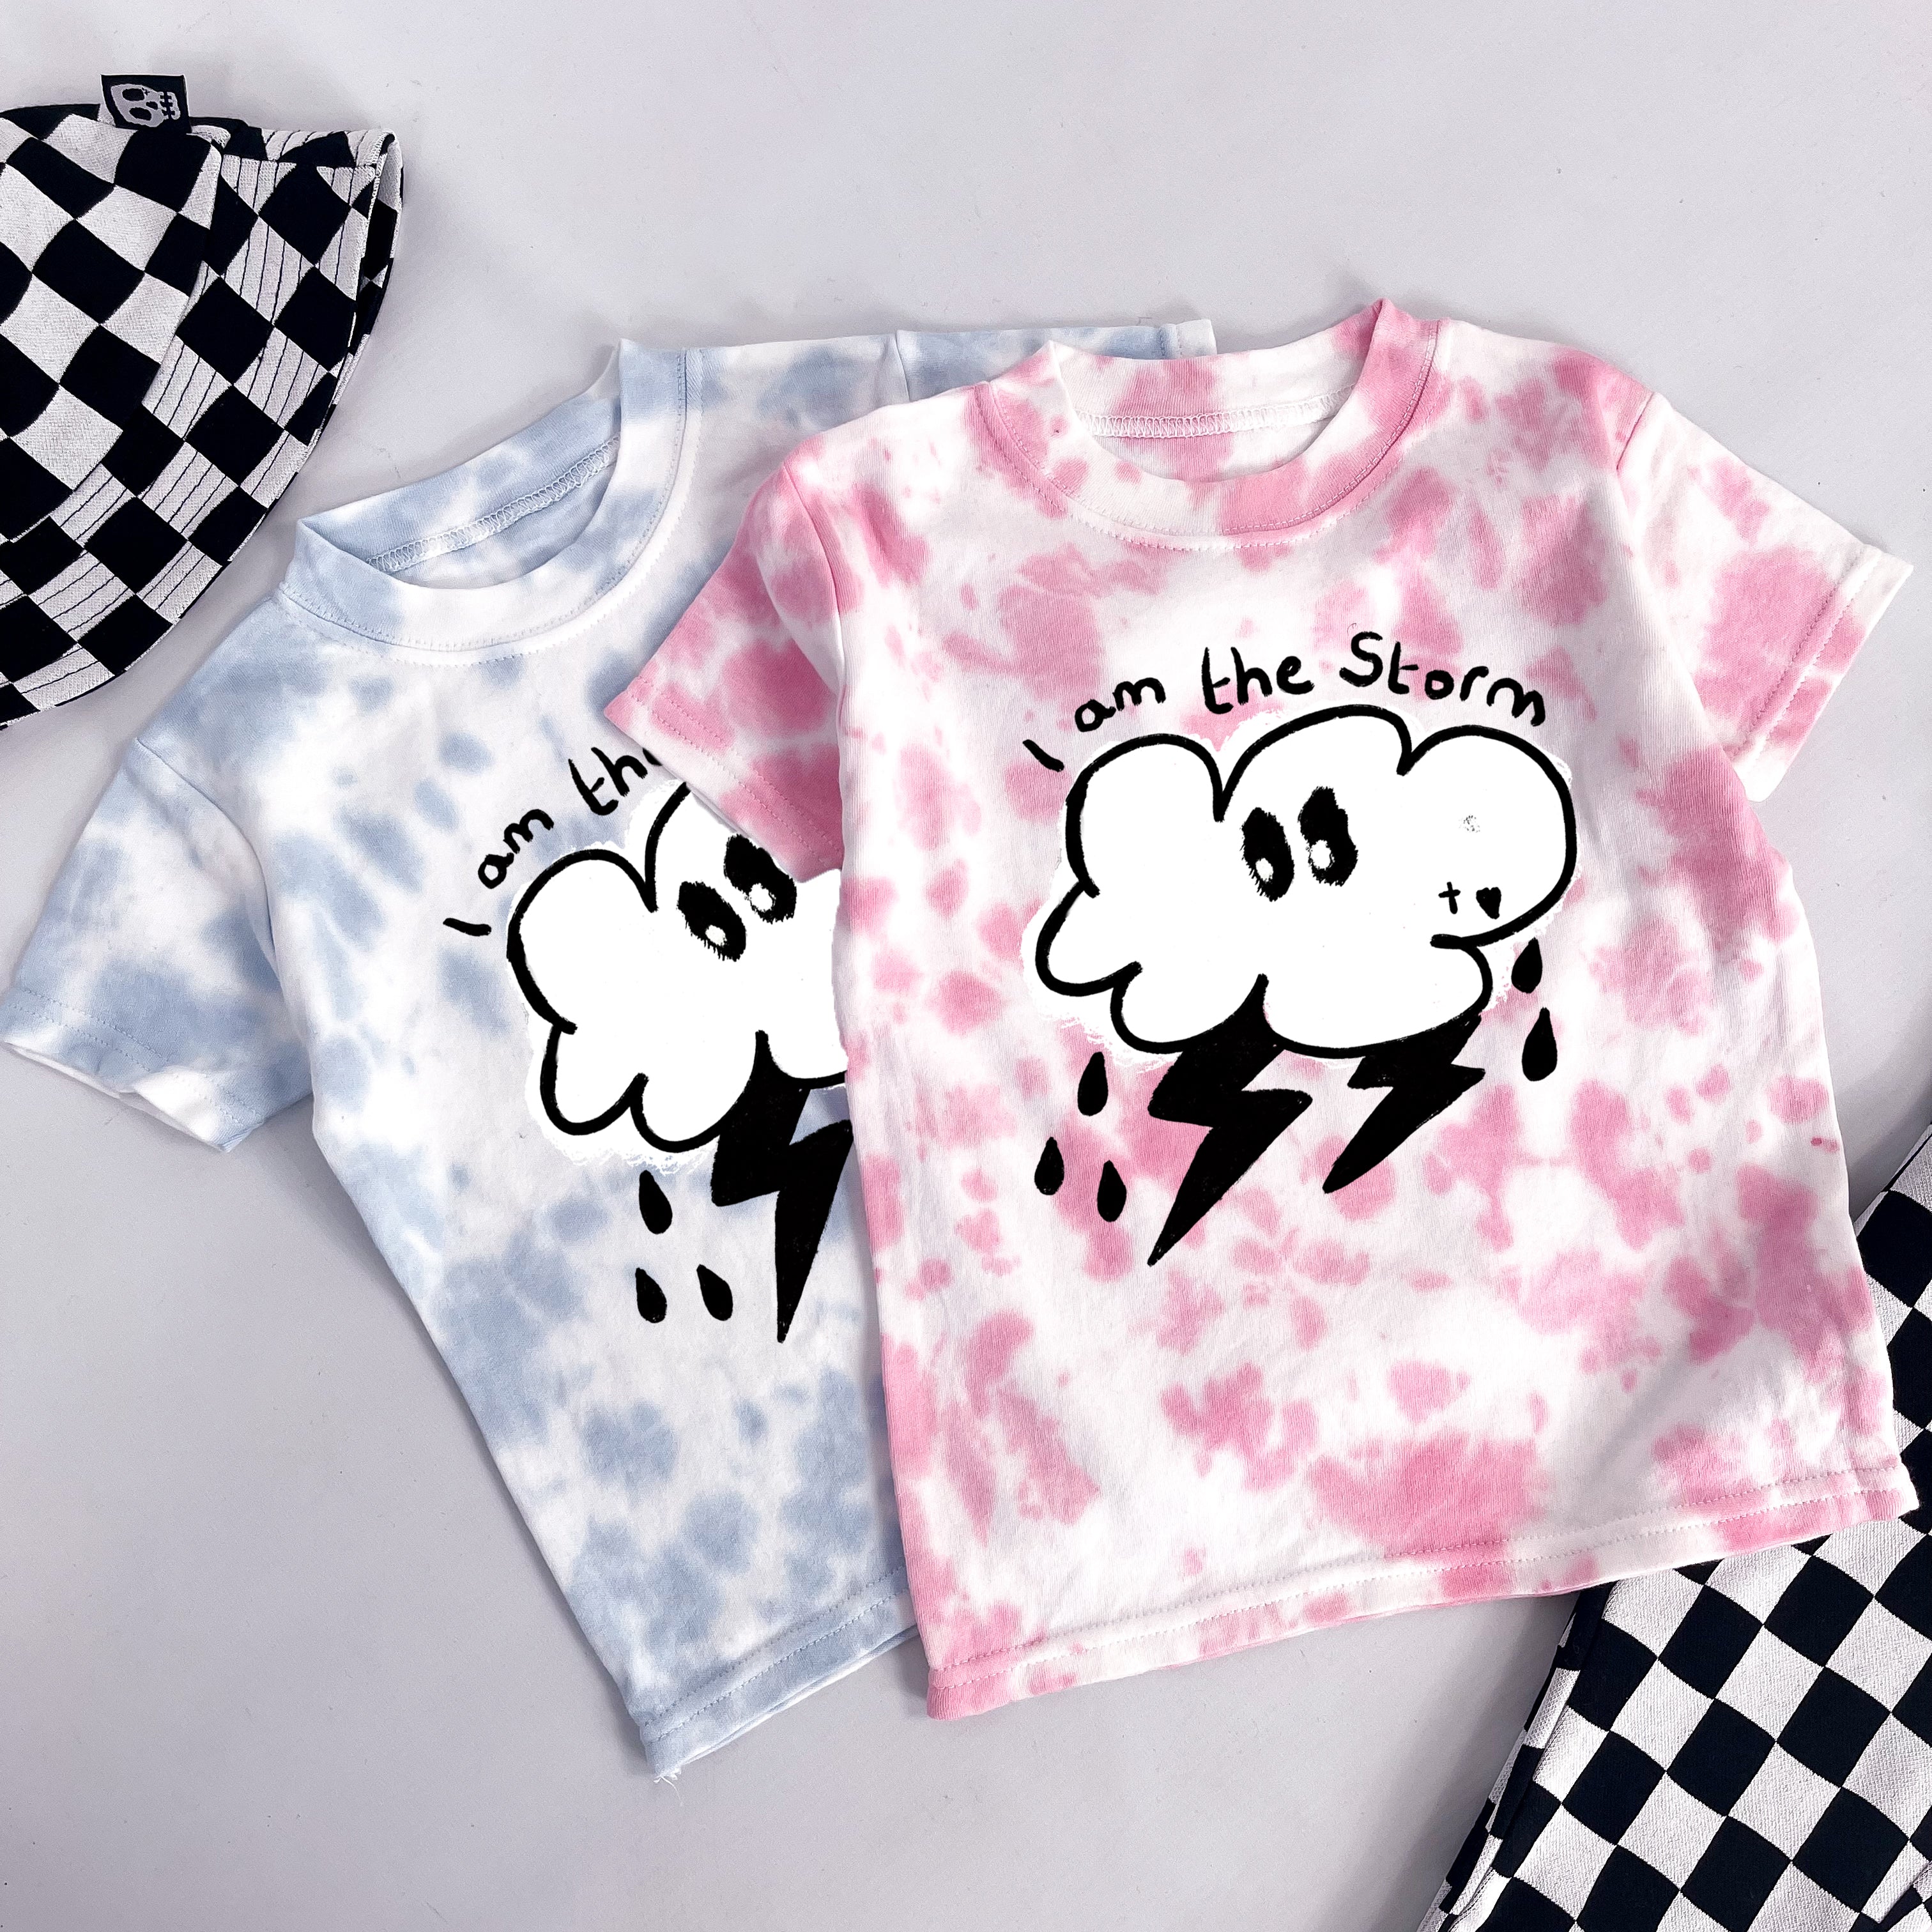 Kids Tie Dye T-Shirt - I Am The Storm Design - skeletots.co.uk